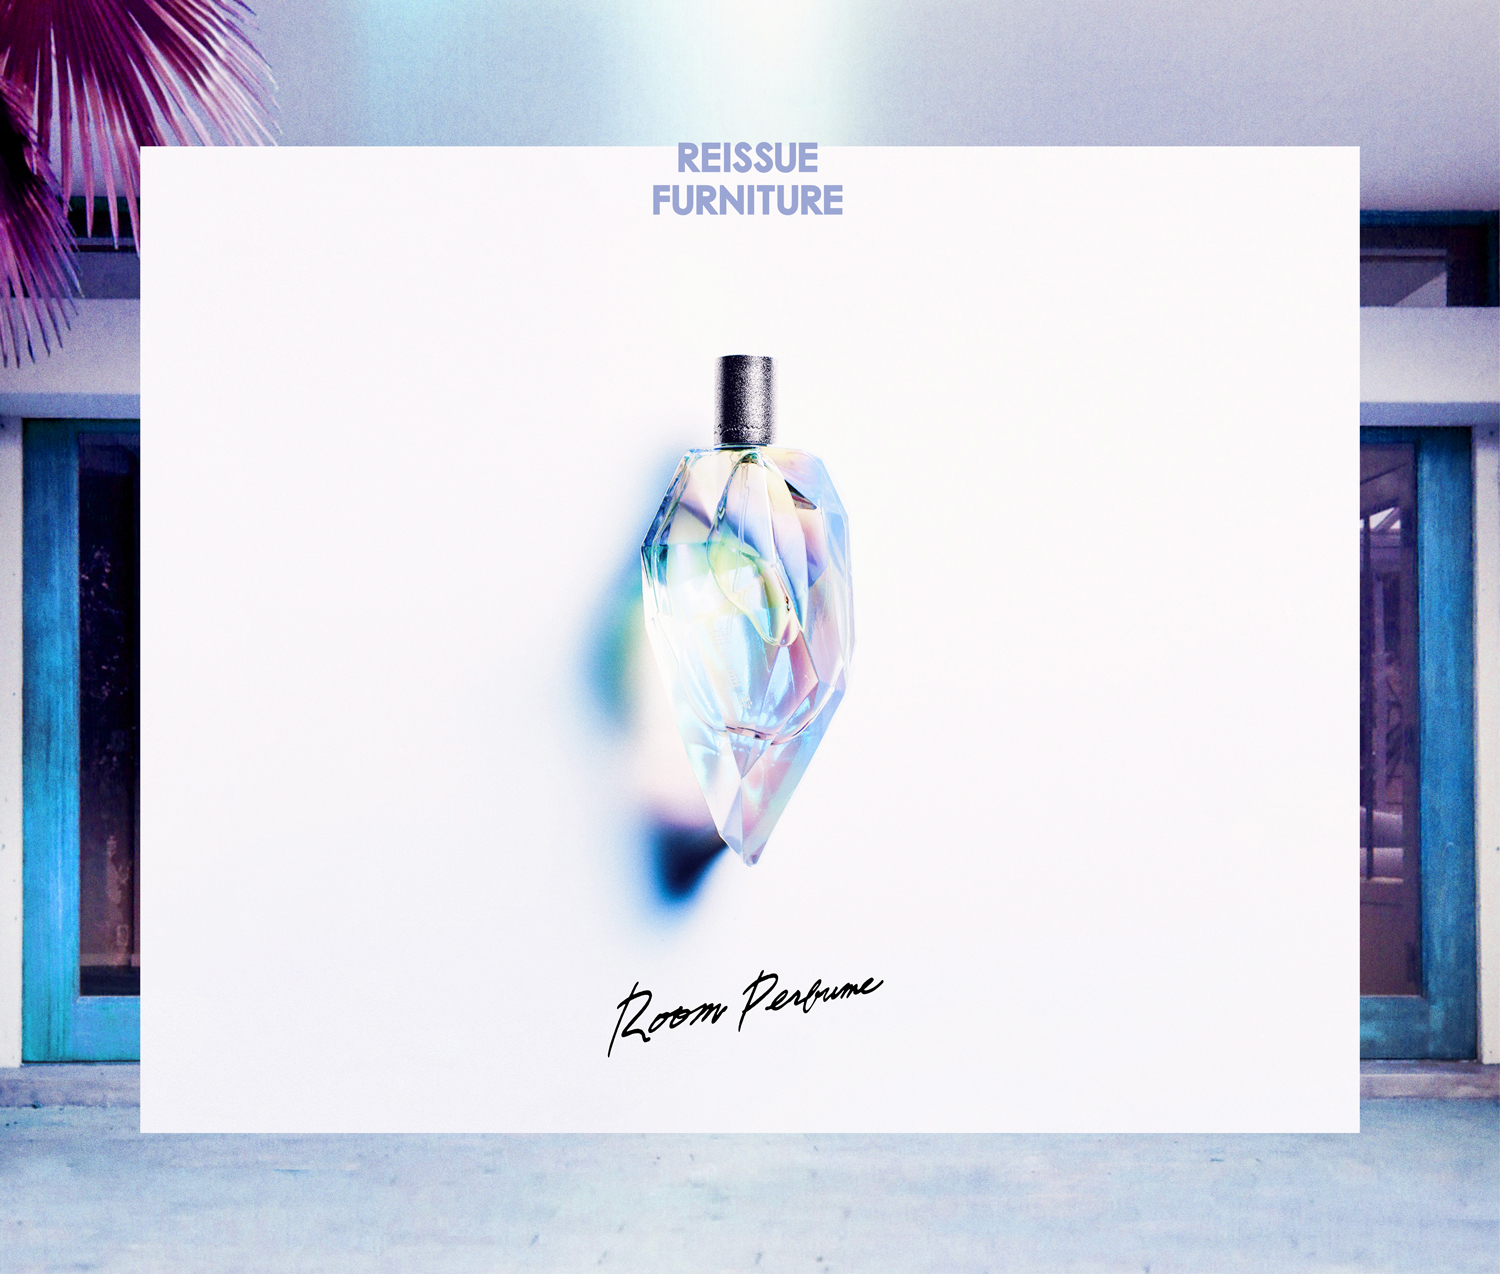 「Room Perfume」